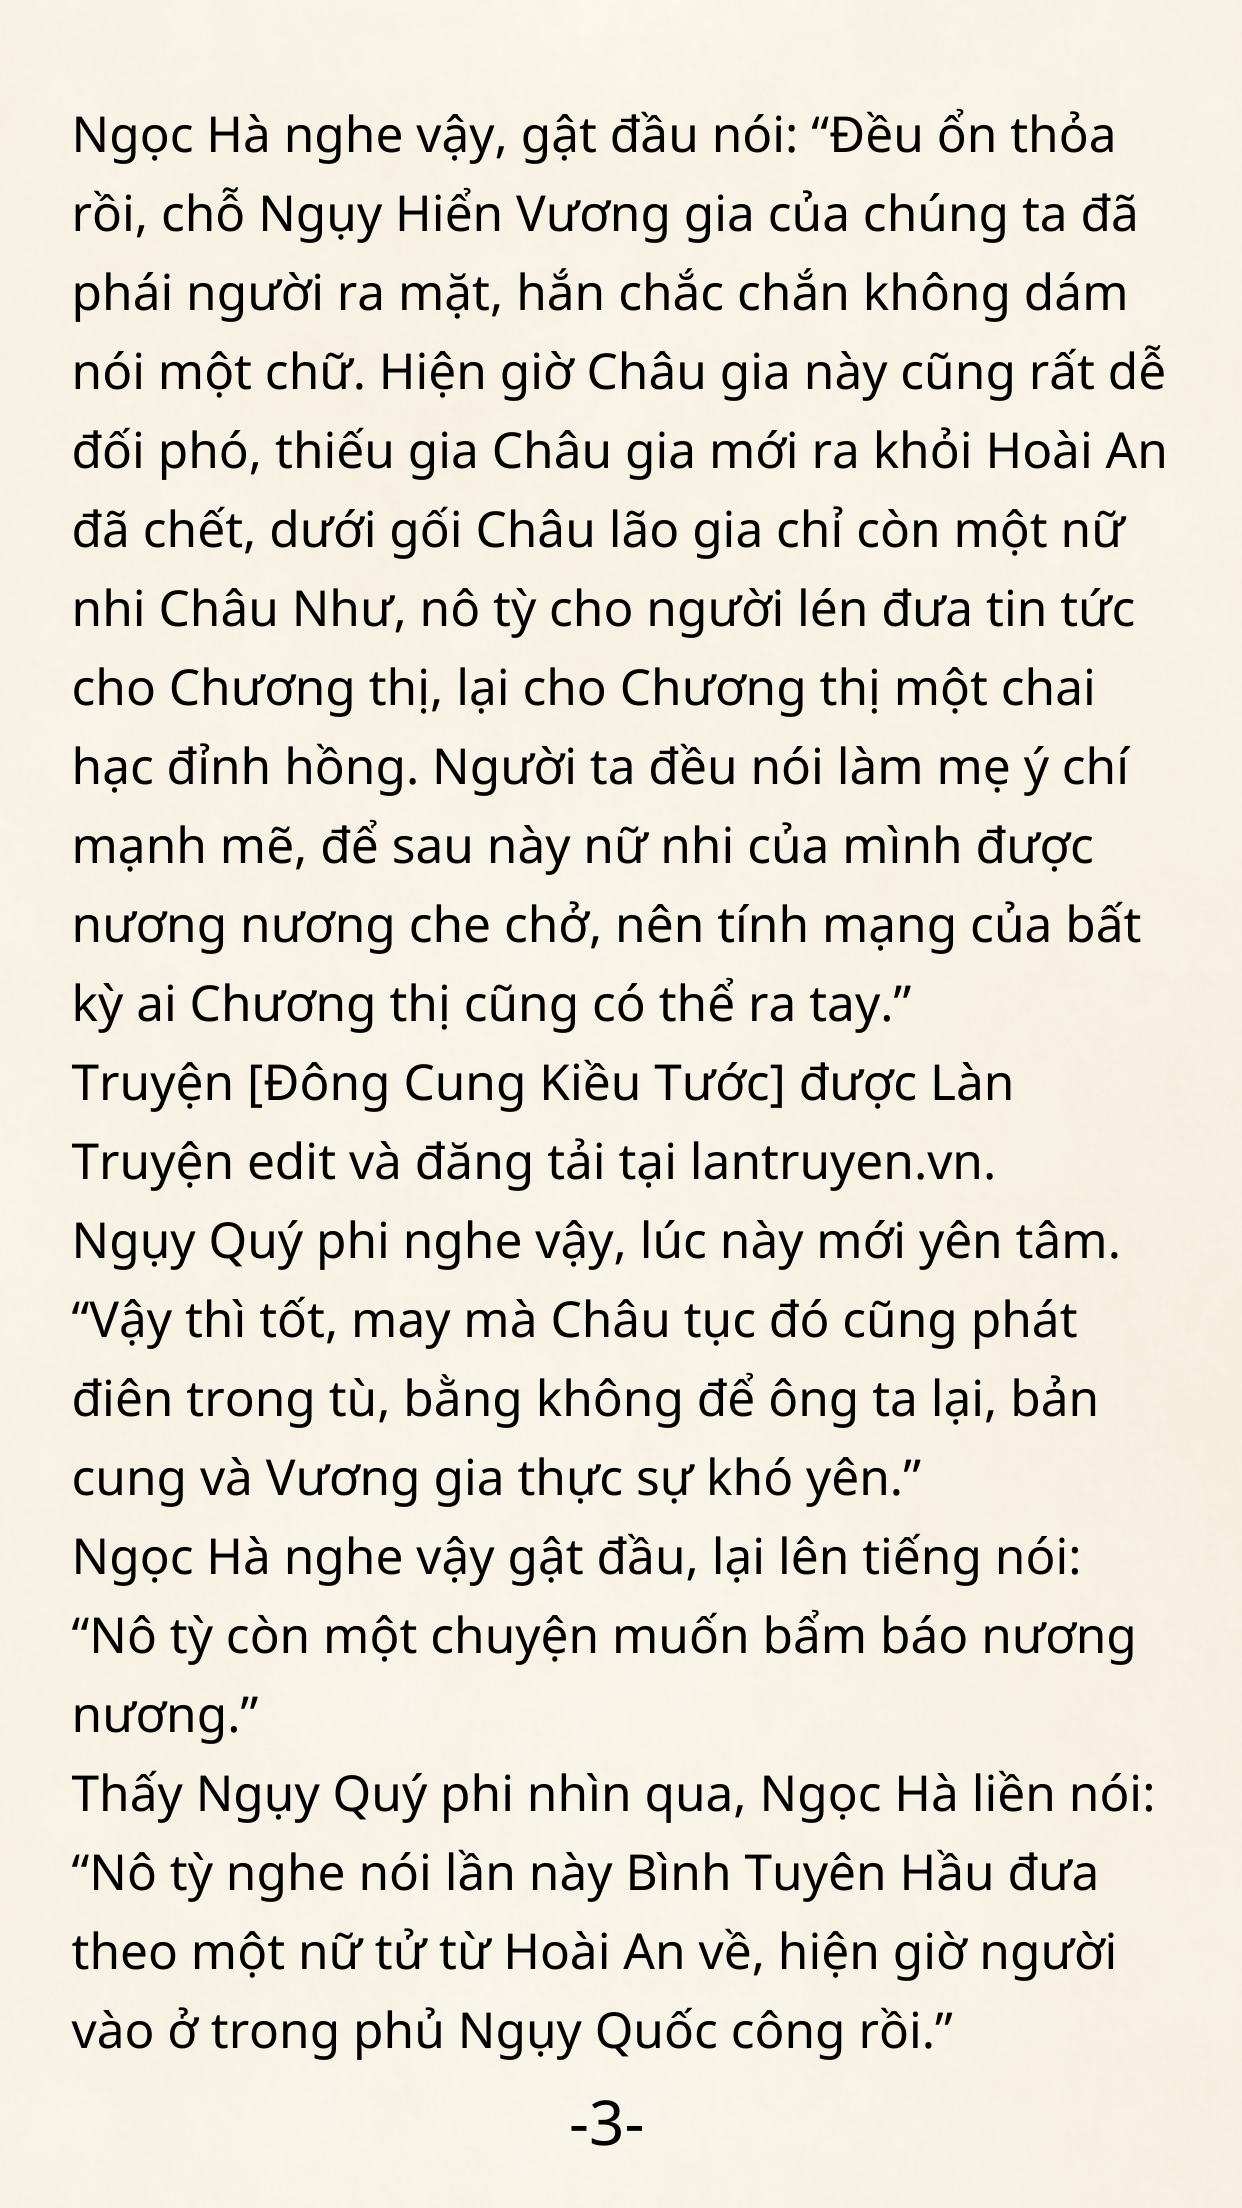 Dong-cung-kieu-tuoc-36-3.png